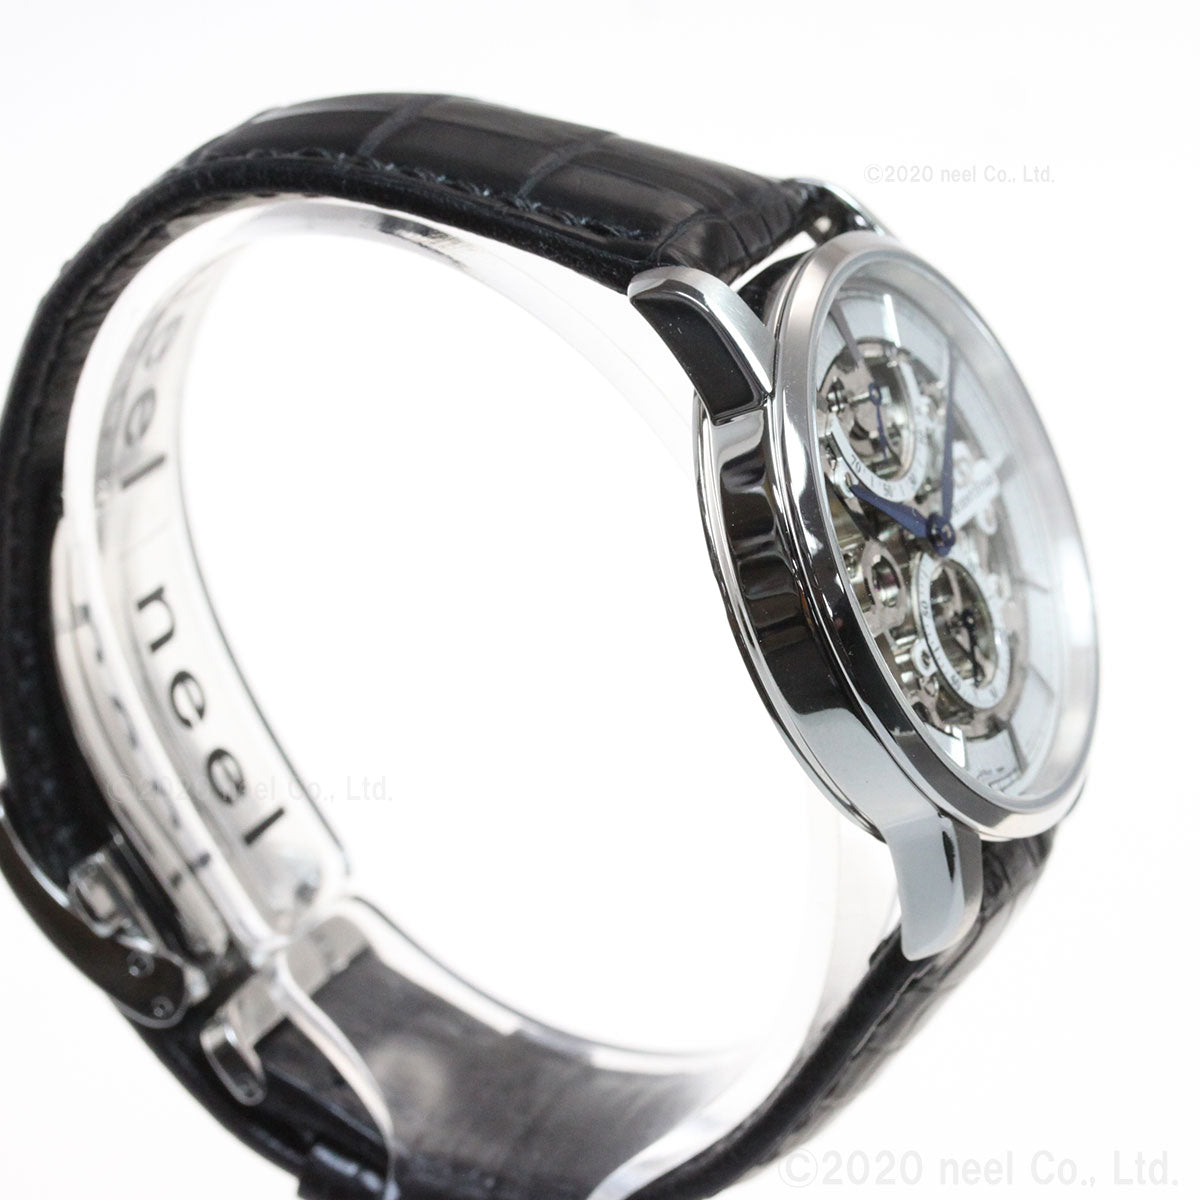 オリエント手巻き式メンズ腕時計